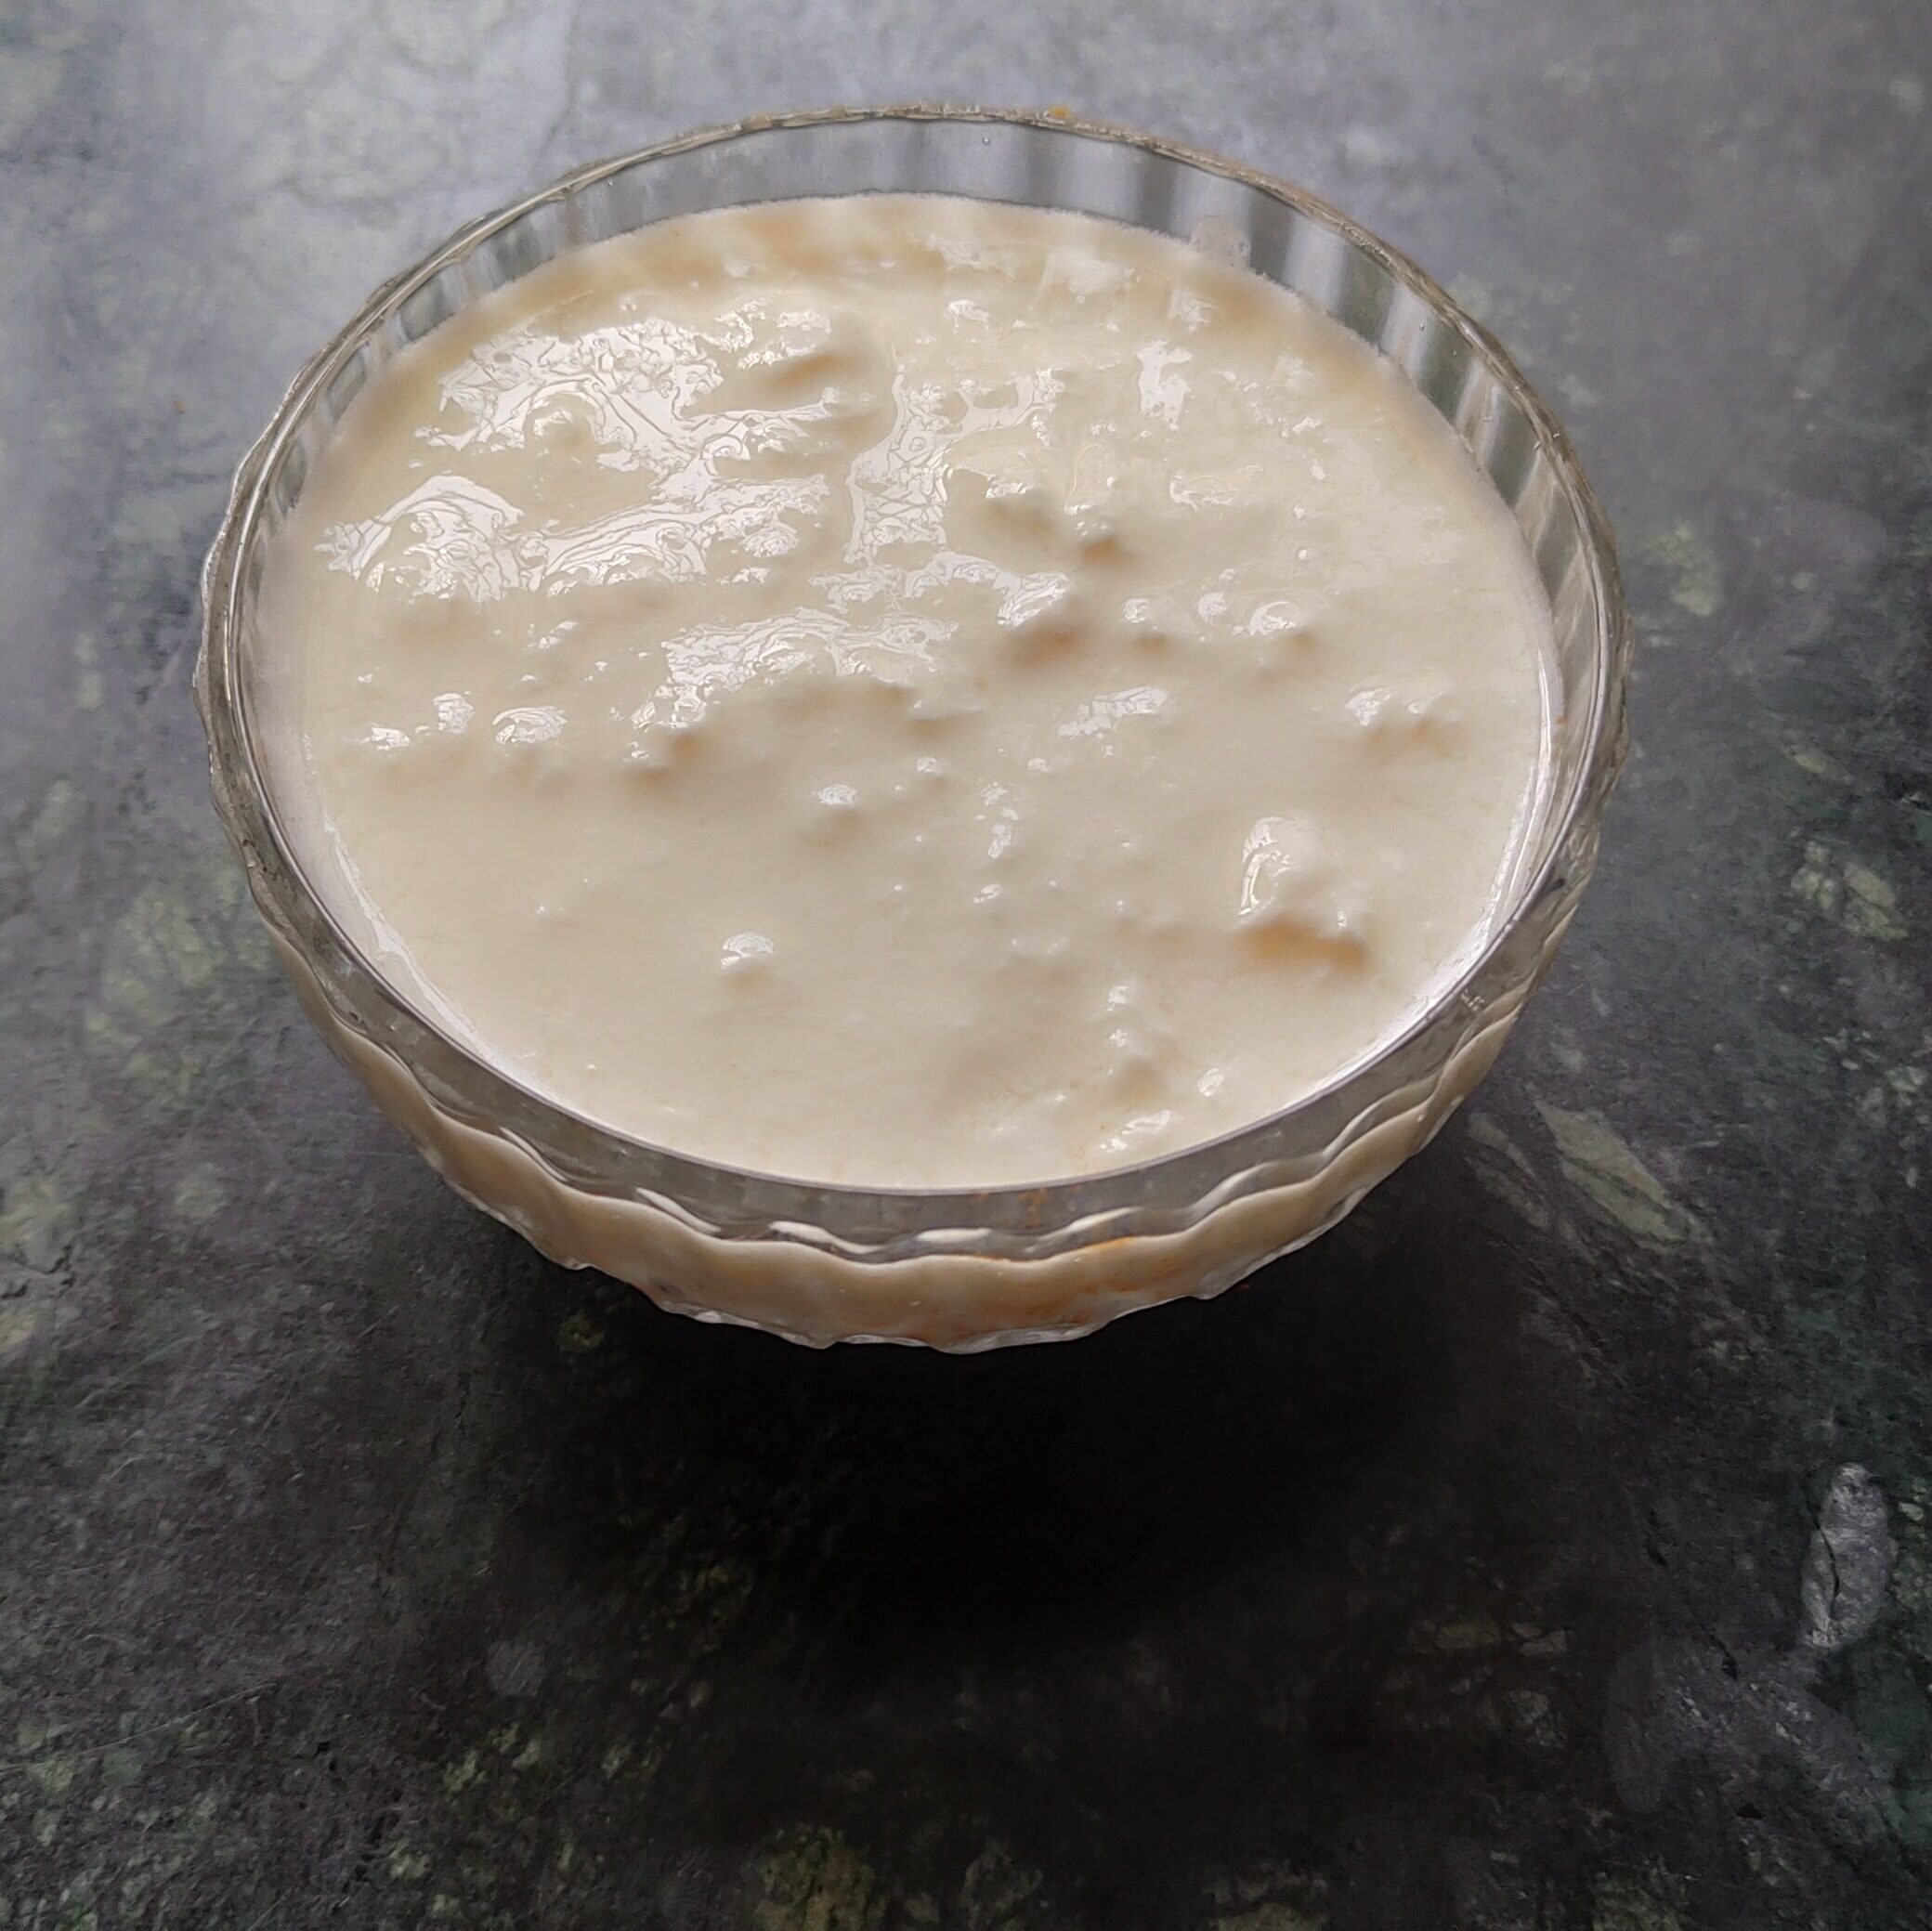 Yogurt: How to make chicken tikka in air fryer